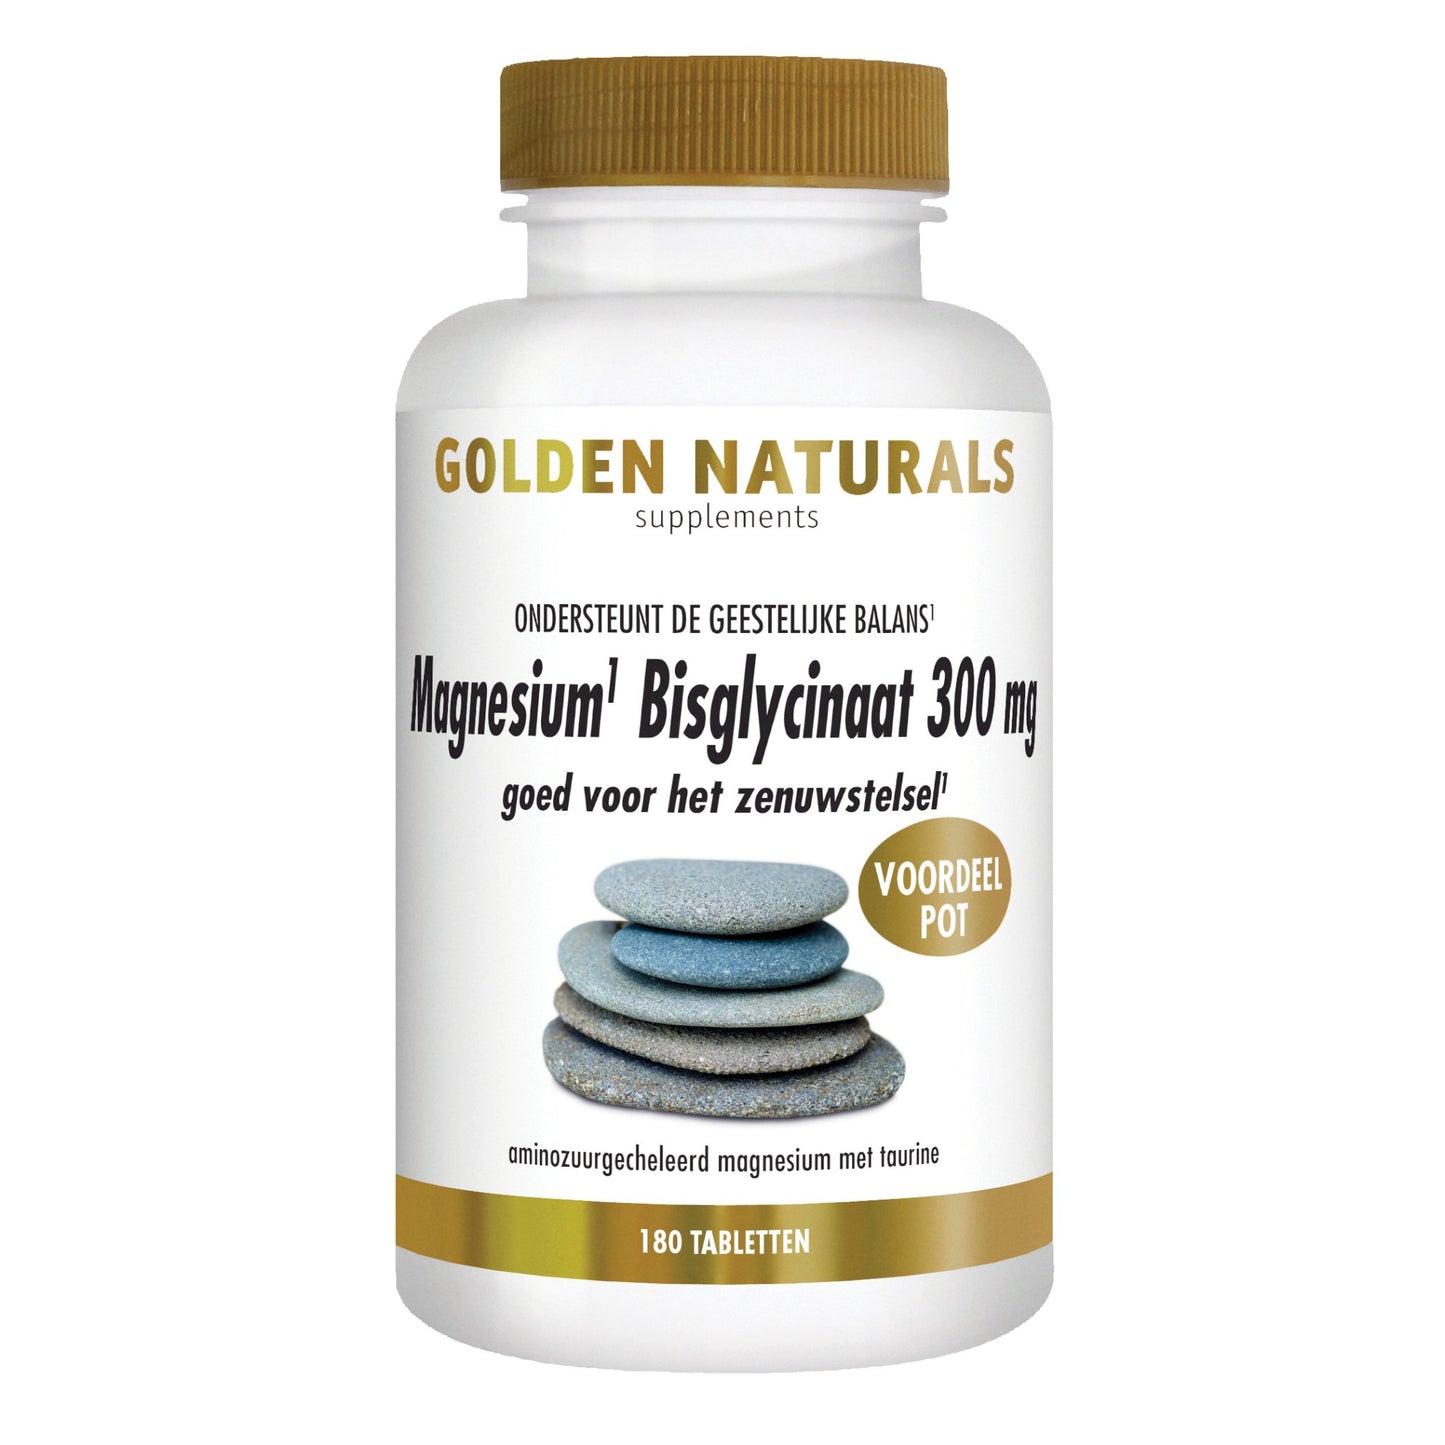 Magnesium Bisglycinaat 300 mg - 180 - veganistische tabletten Supplement Golden Naturals   